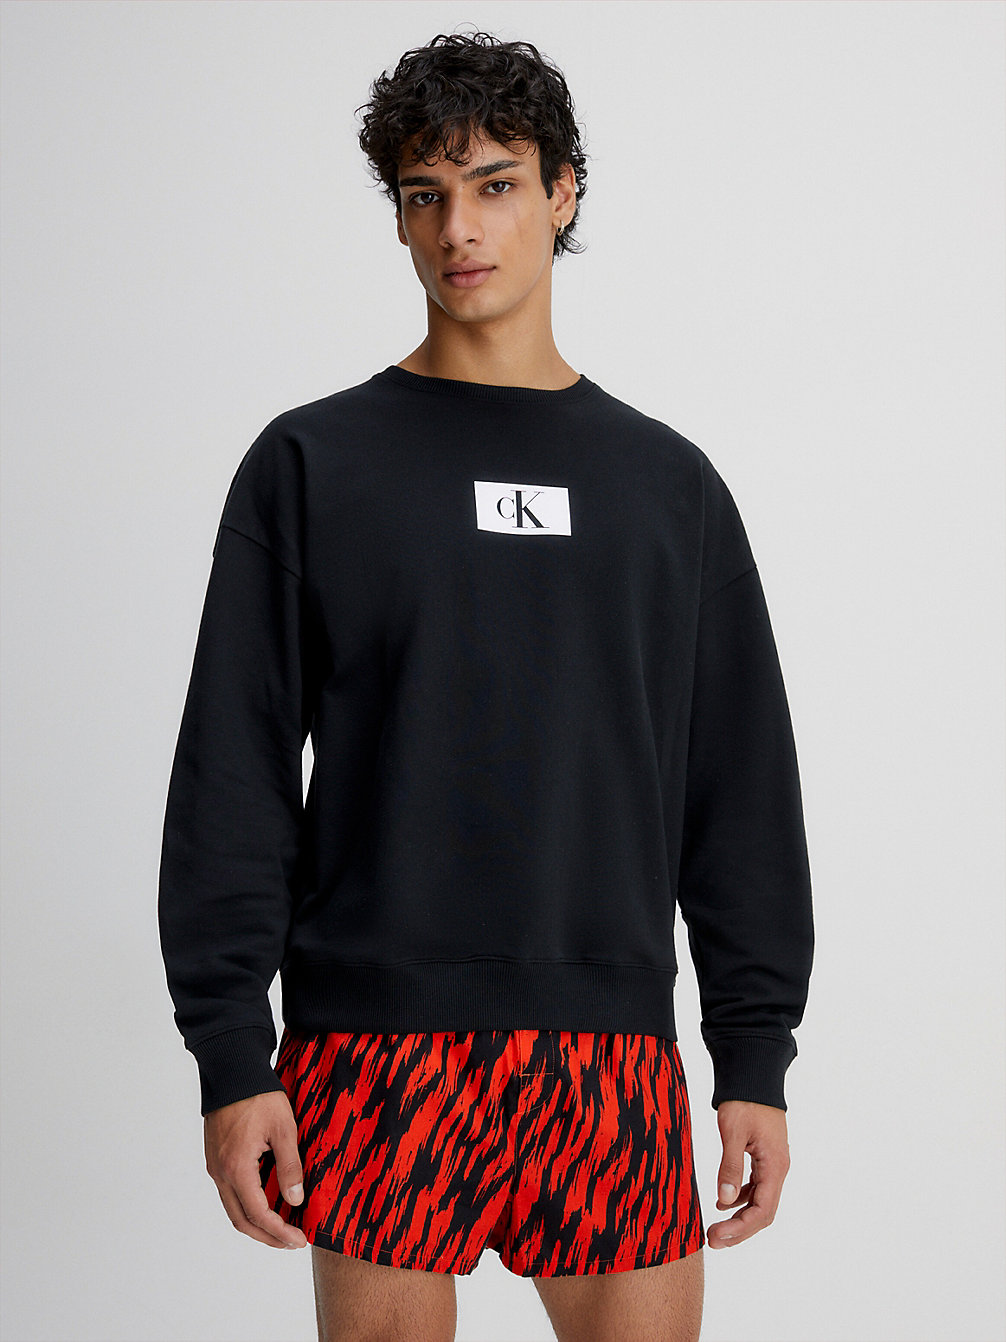 BLACK Lounge-Sweatshirt - Ck96 undefined Herren Calvin Klein